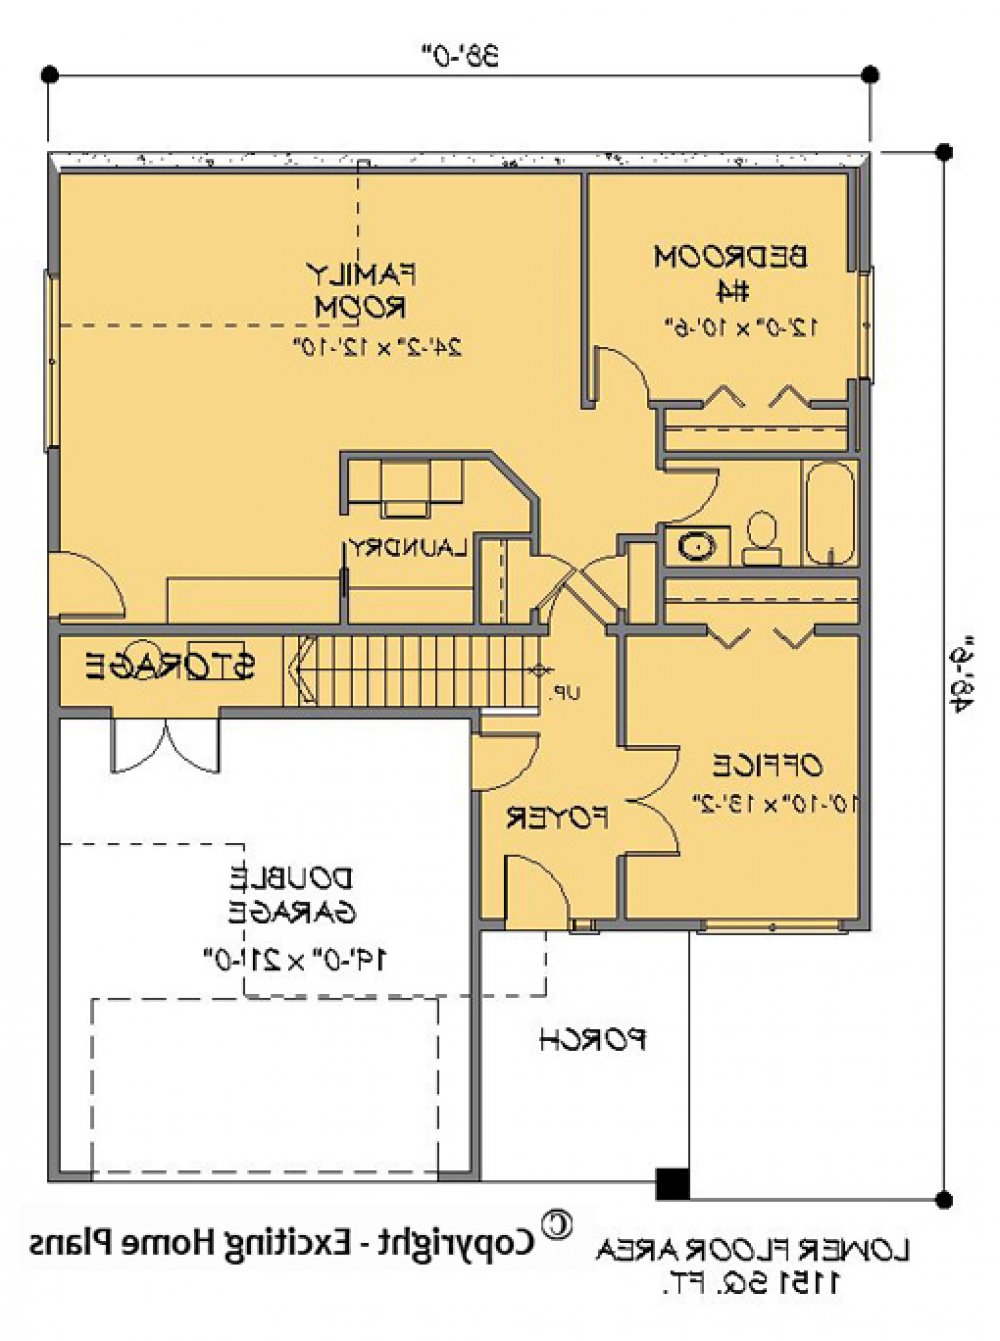 House Plan E1236-10 Lower Floor Plan REVERSE